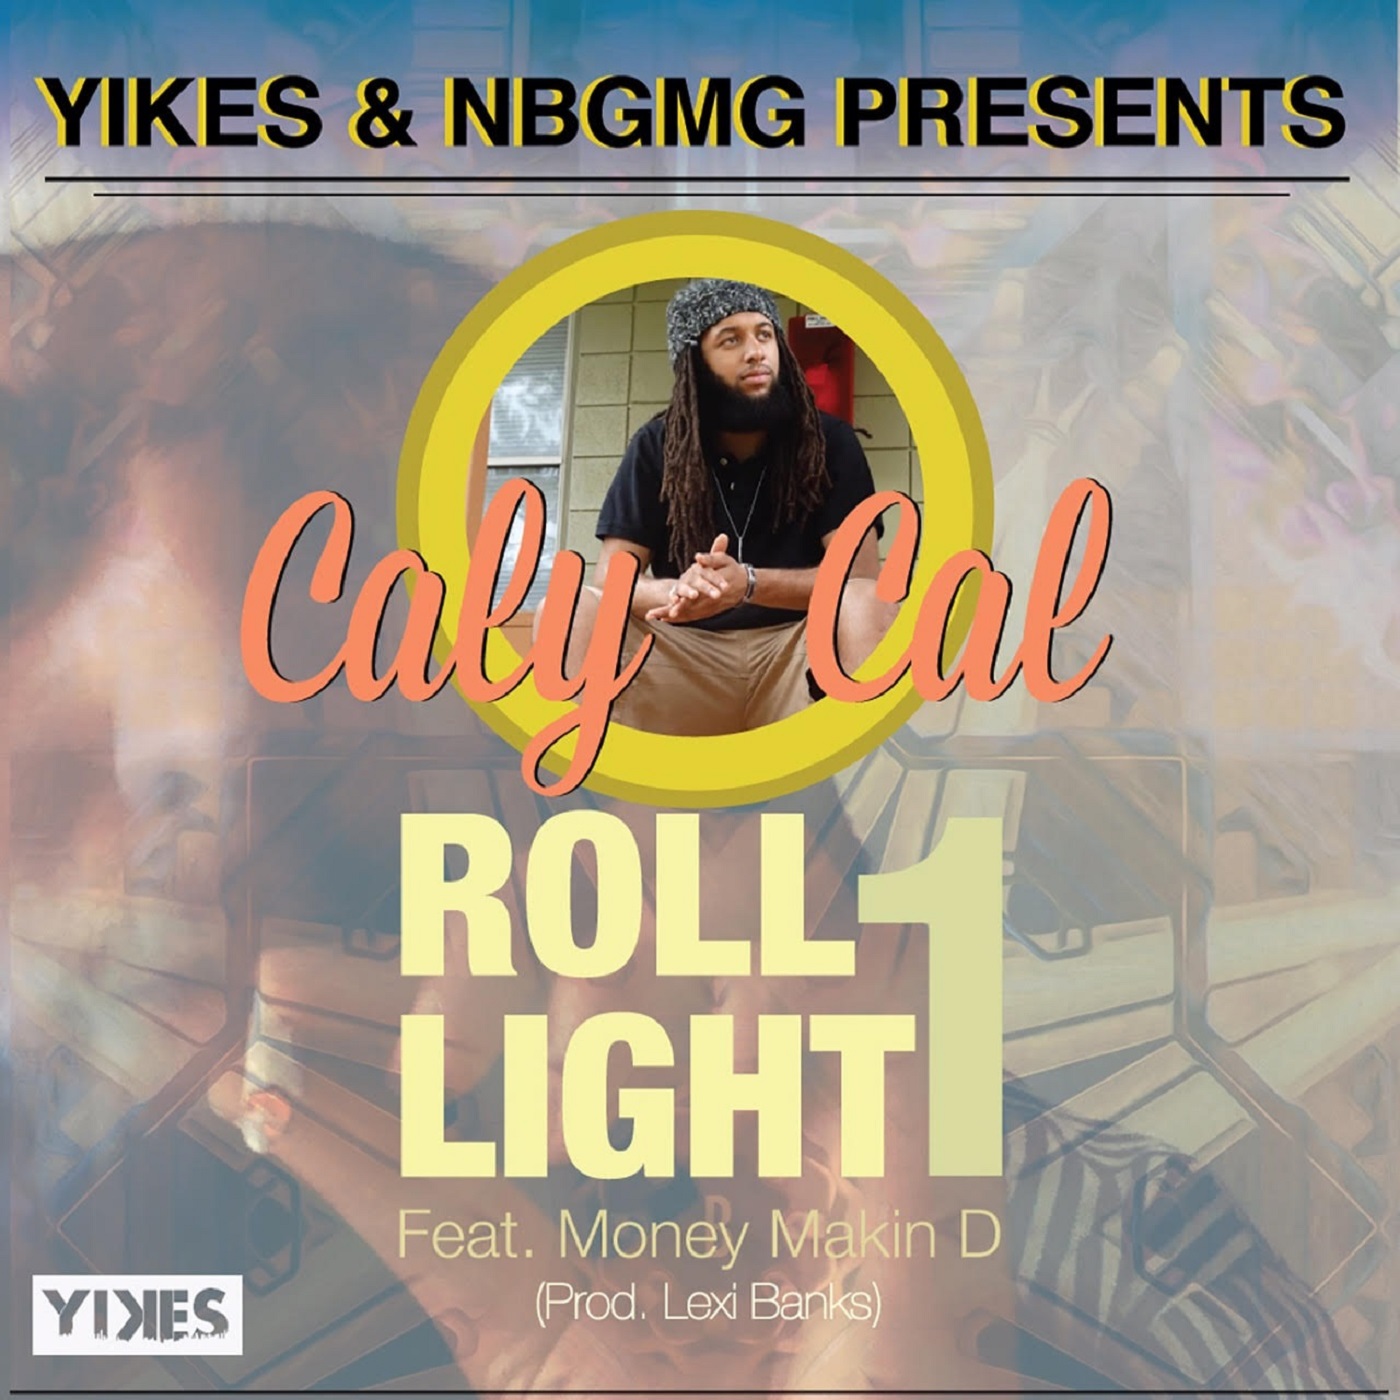 Roll 1 Light 1 Feat Money Makin' D